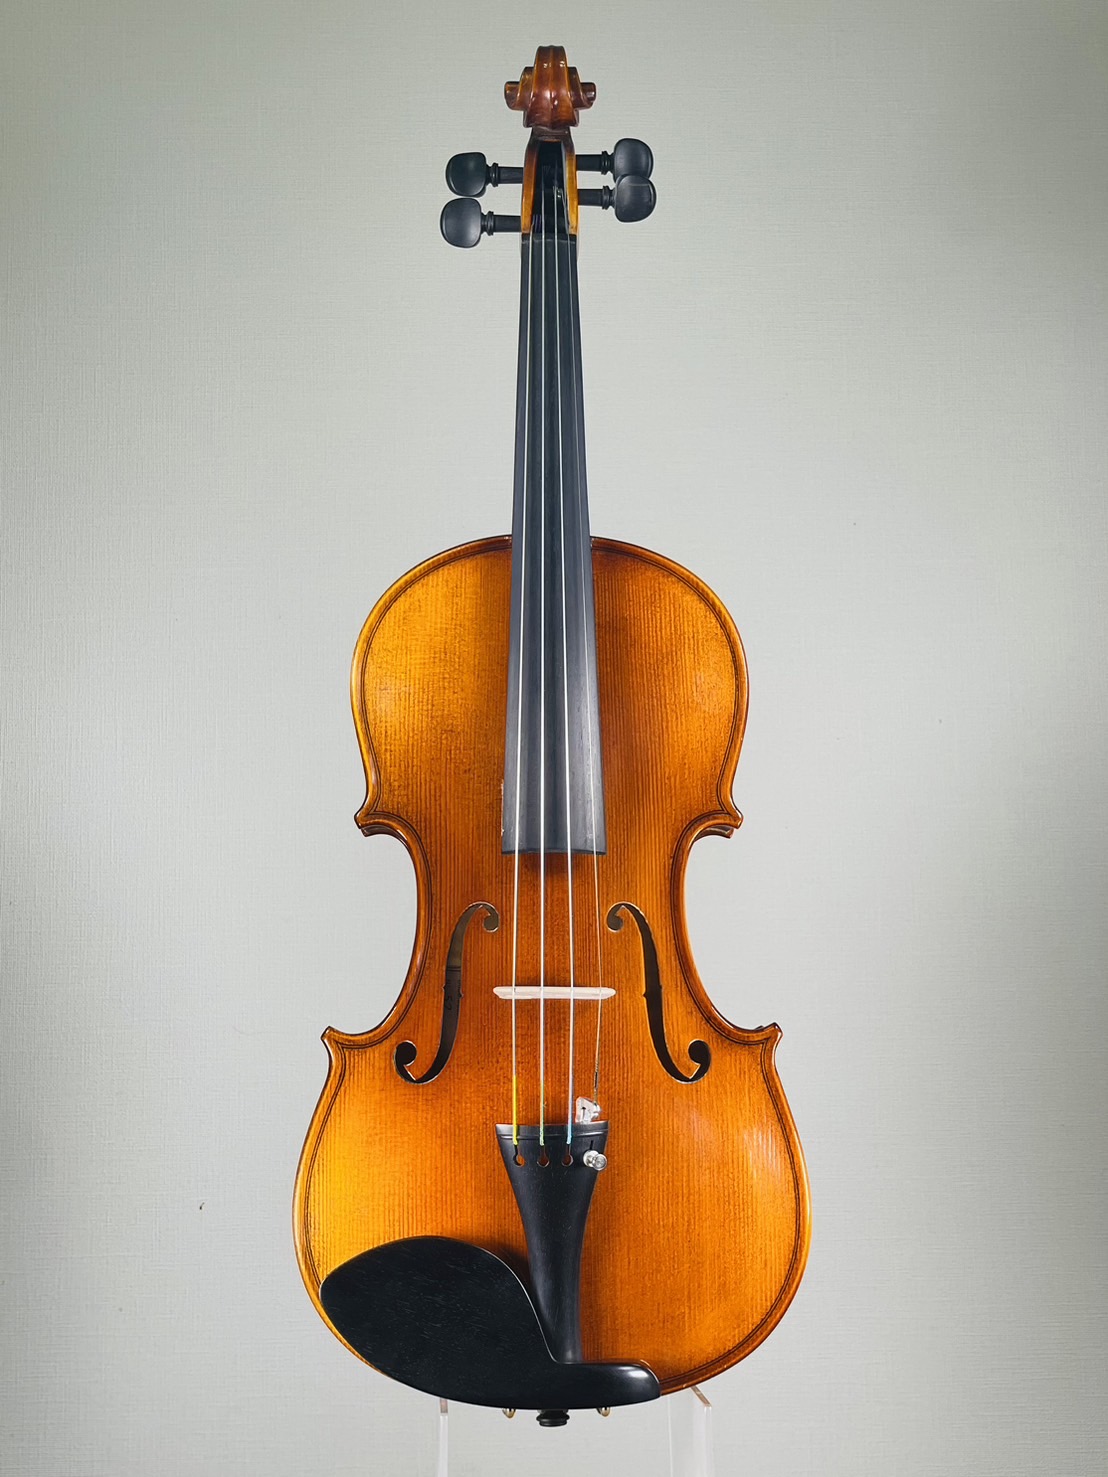 メンテ済み heinrich gill 4/4 ドイツ製 バイオリン ハインリッヒ ギル 